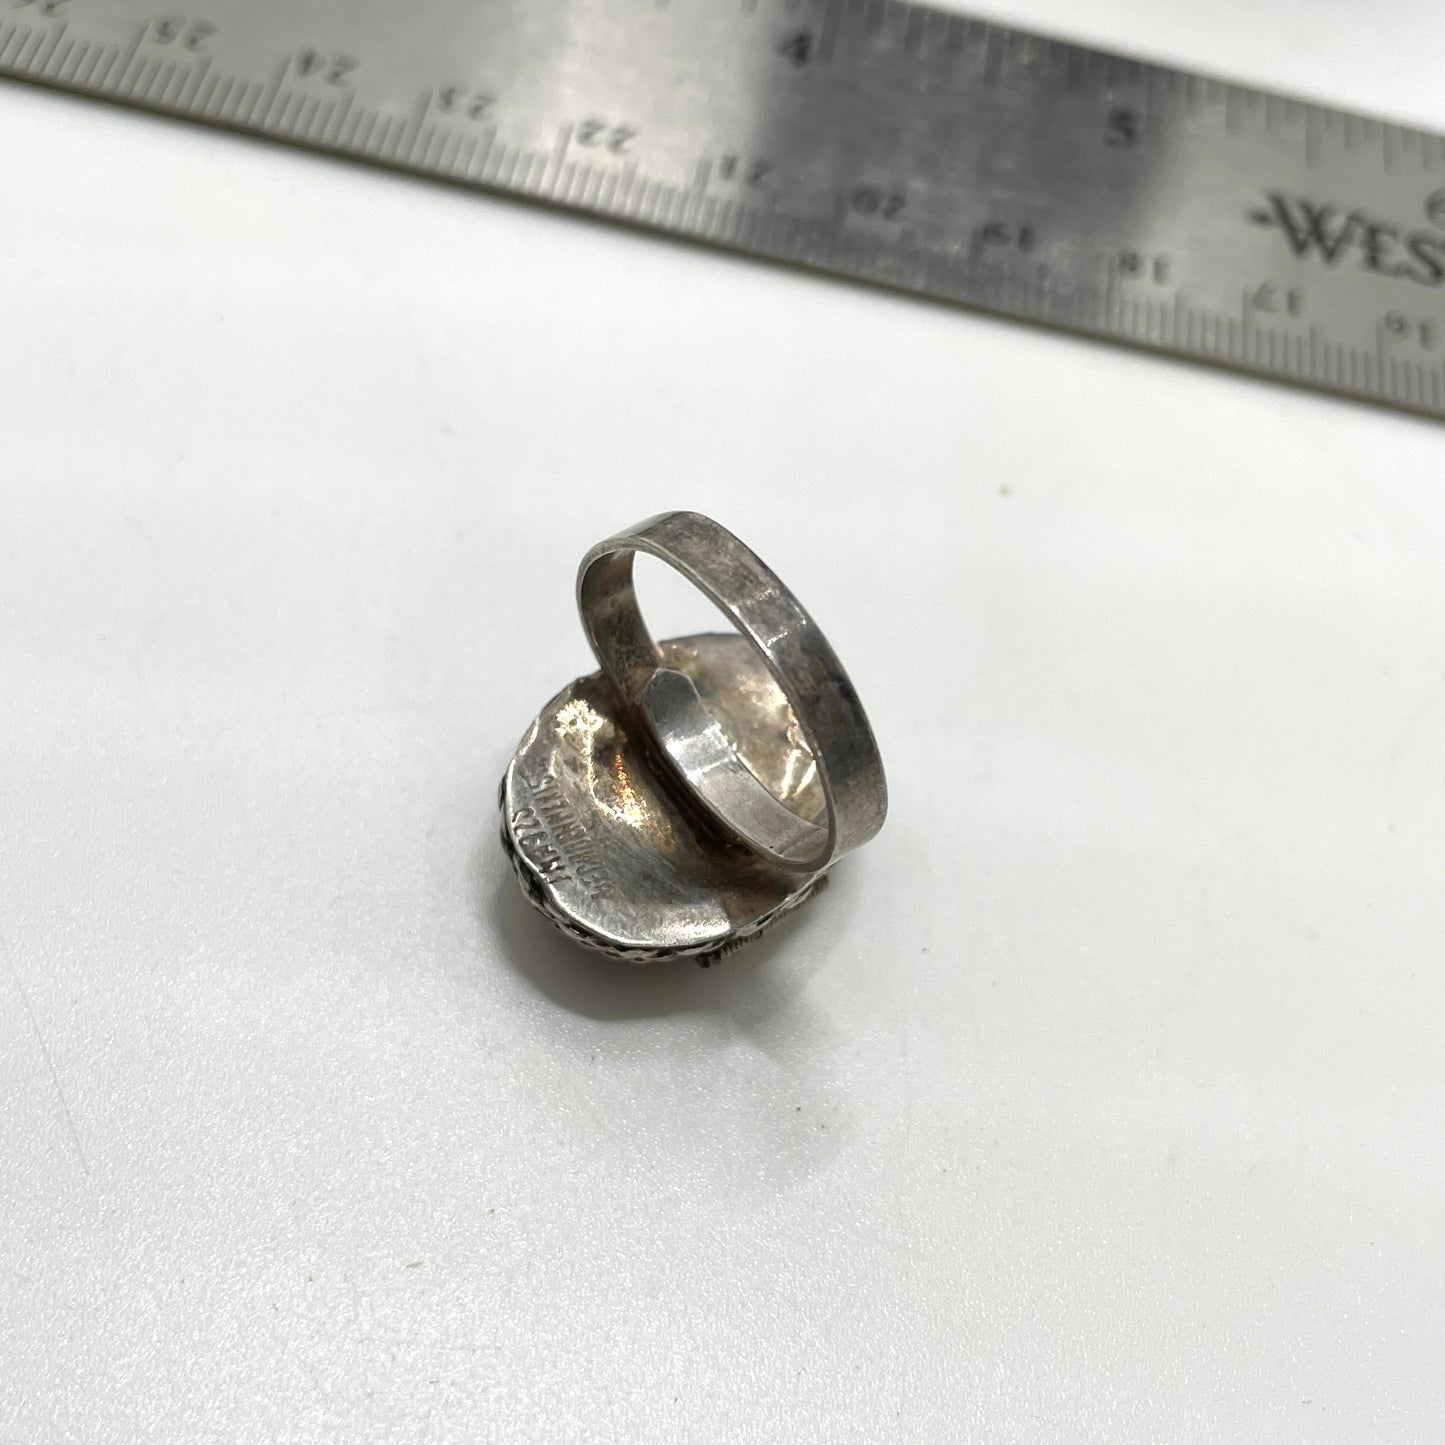 Vintage Sterling Silver Abalone Locket Ring - Adjustable Size